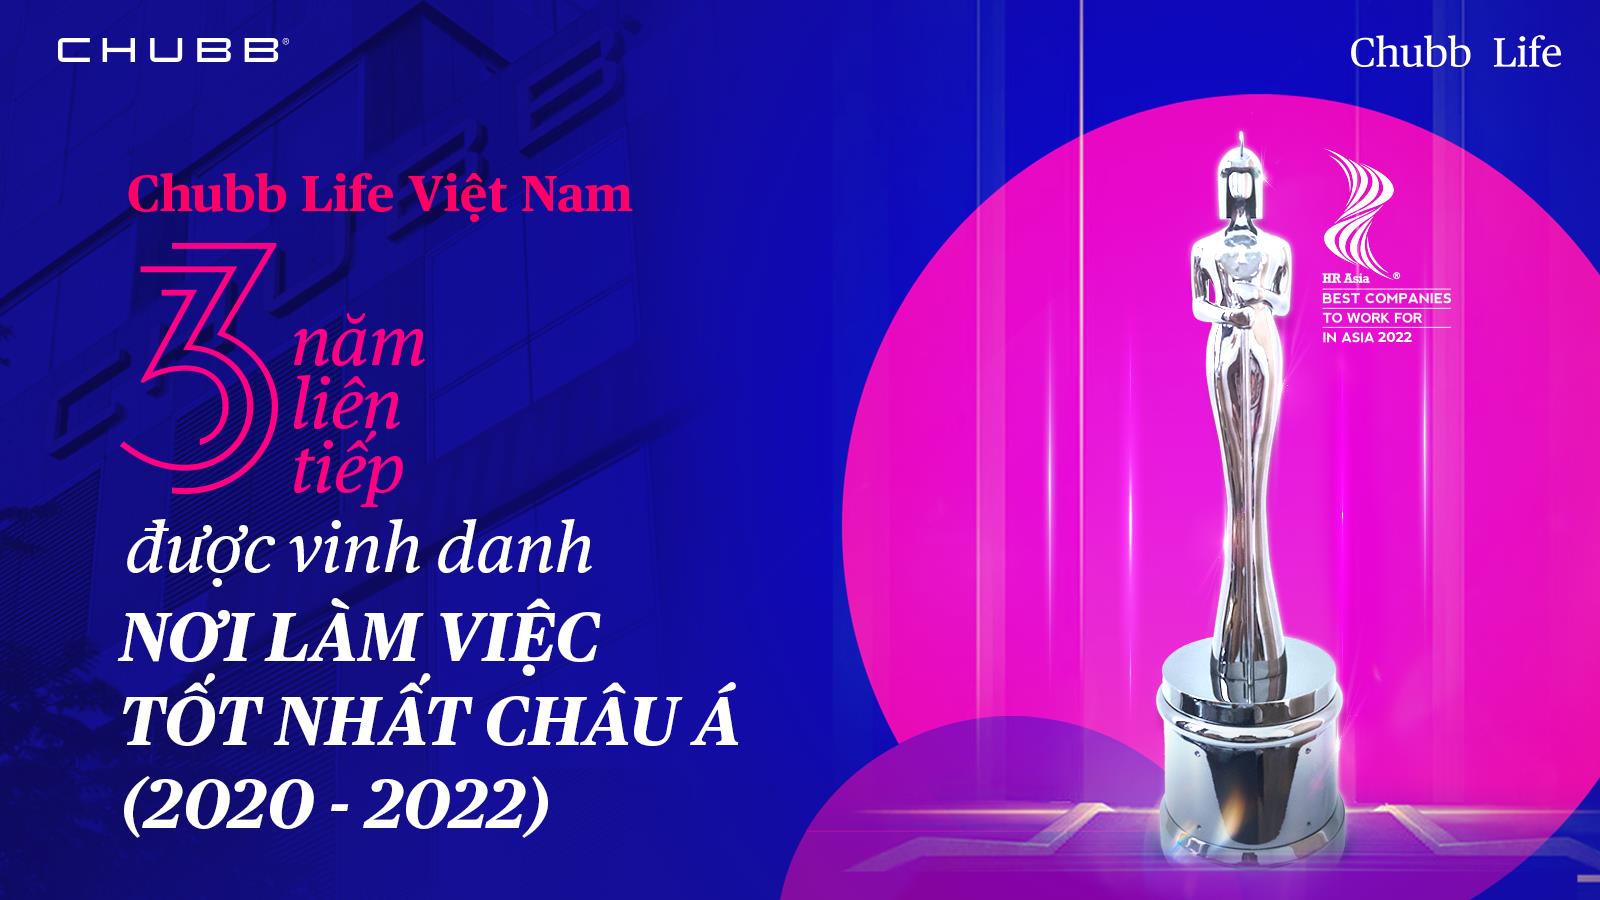 Chubb Life Việt Nam được vinh danh với 2 giải thưởng lớn Châu Á trên lĩnh vực nhân sự lẫn công nghệ - Ảnh 1.